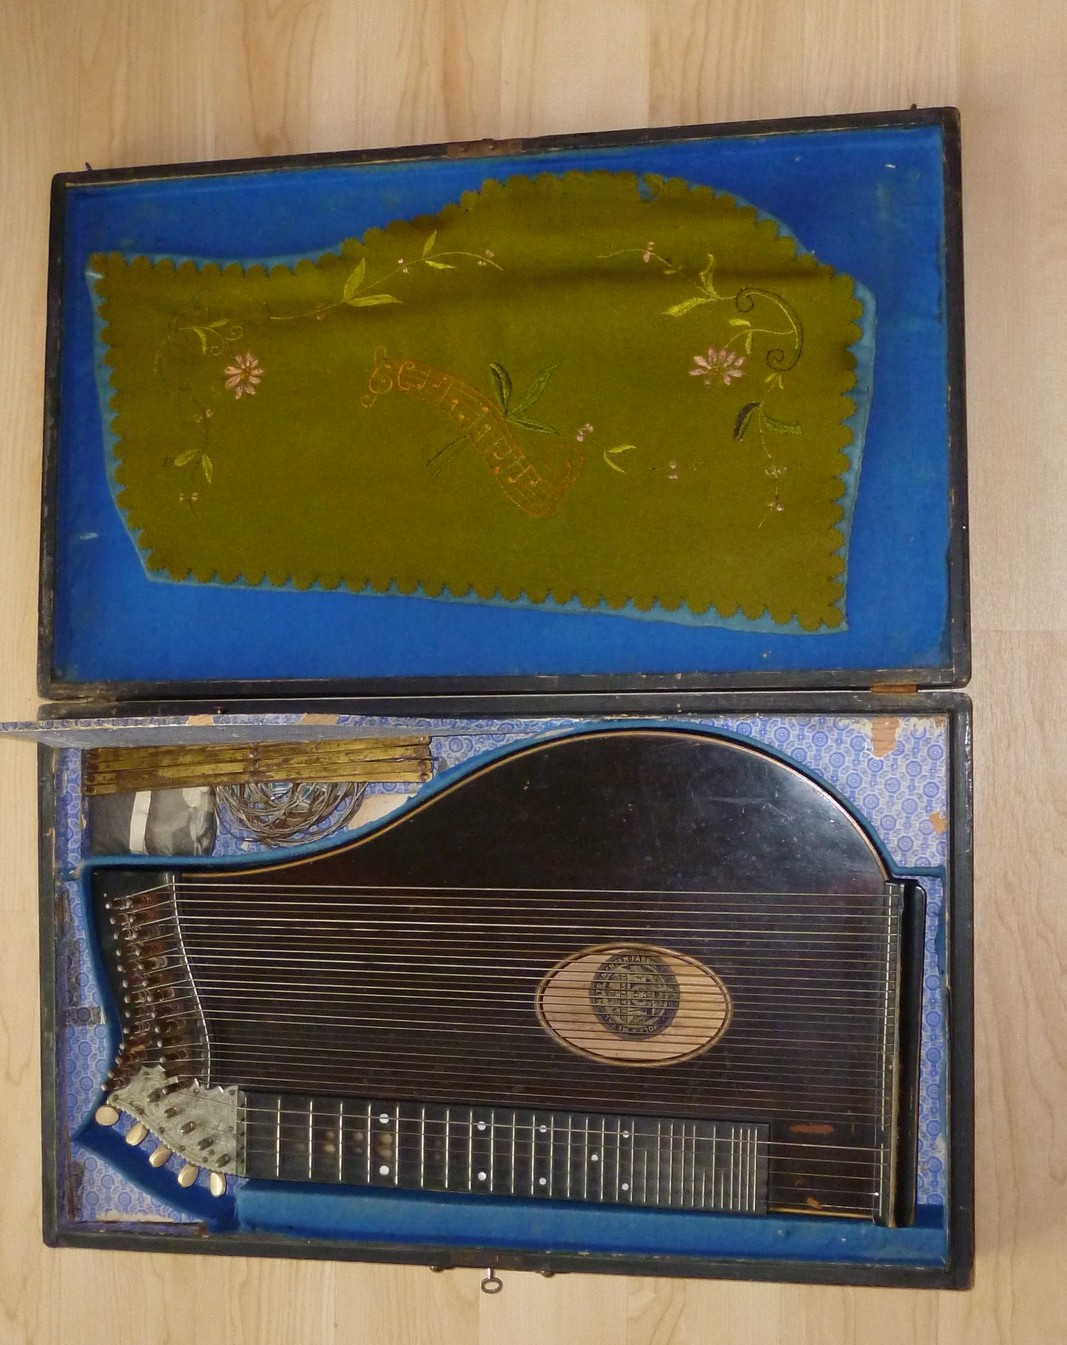 Konzertzither mit Seidenstoff bzw. mit Filz ausgeschlagenem Instrumentenkoffer (Kulturverein Guntersblum CC BY-NC-SA)